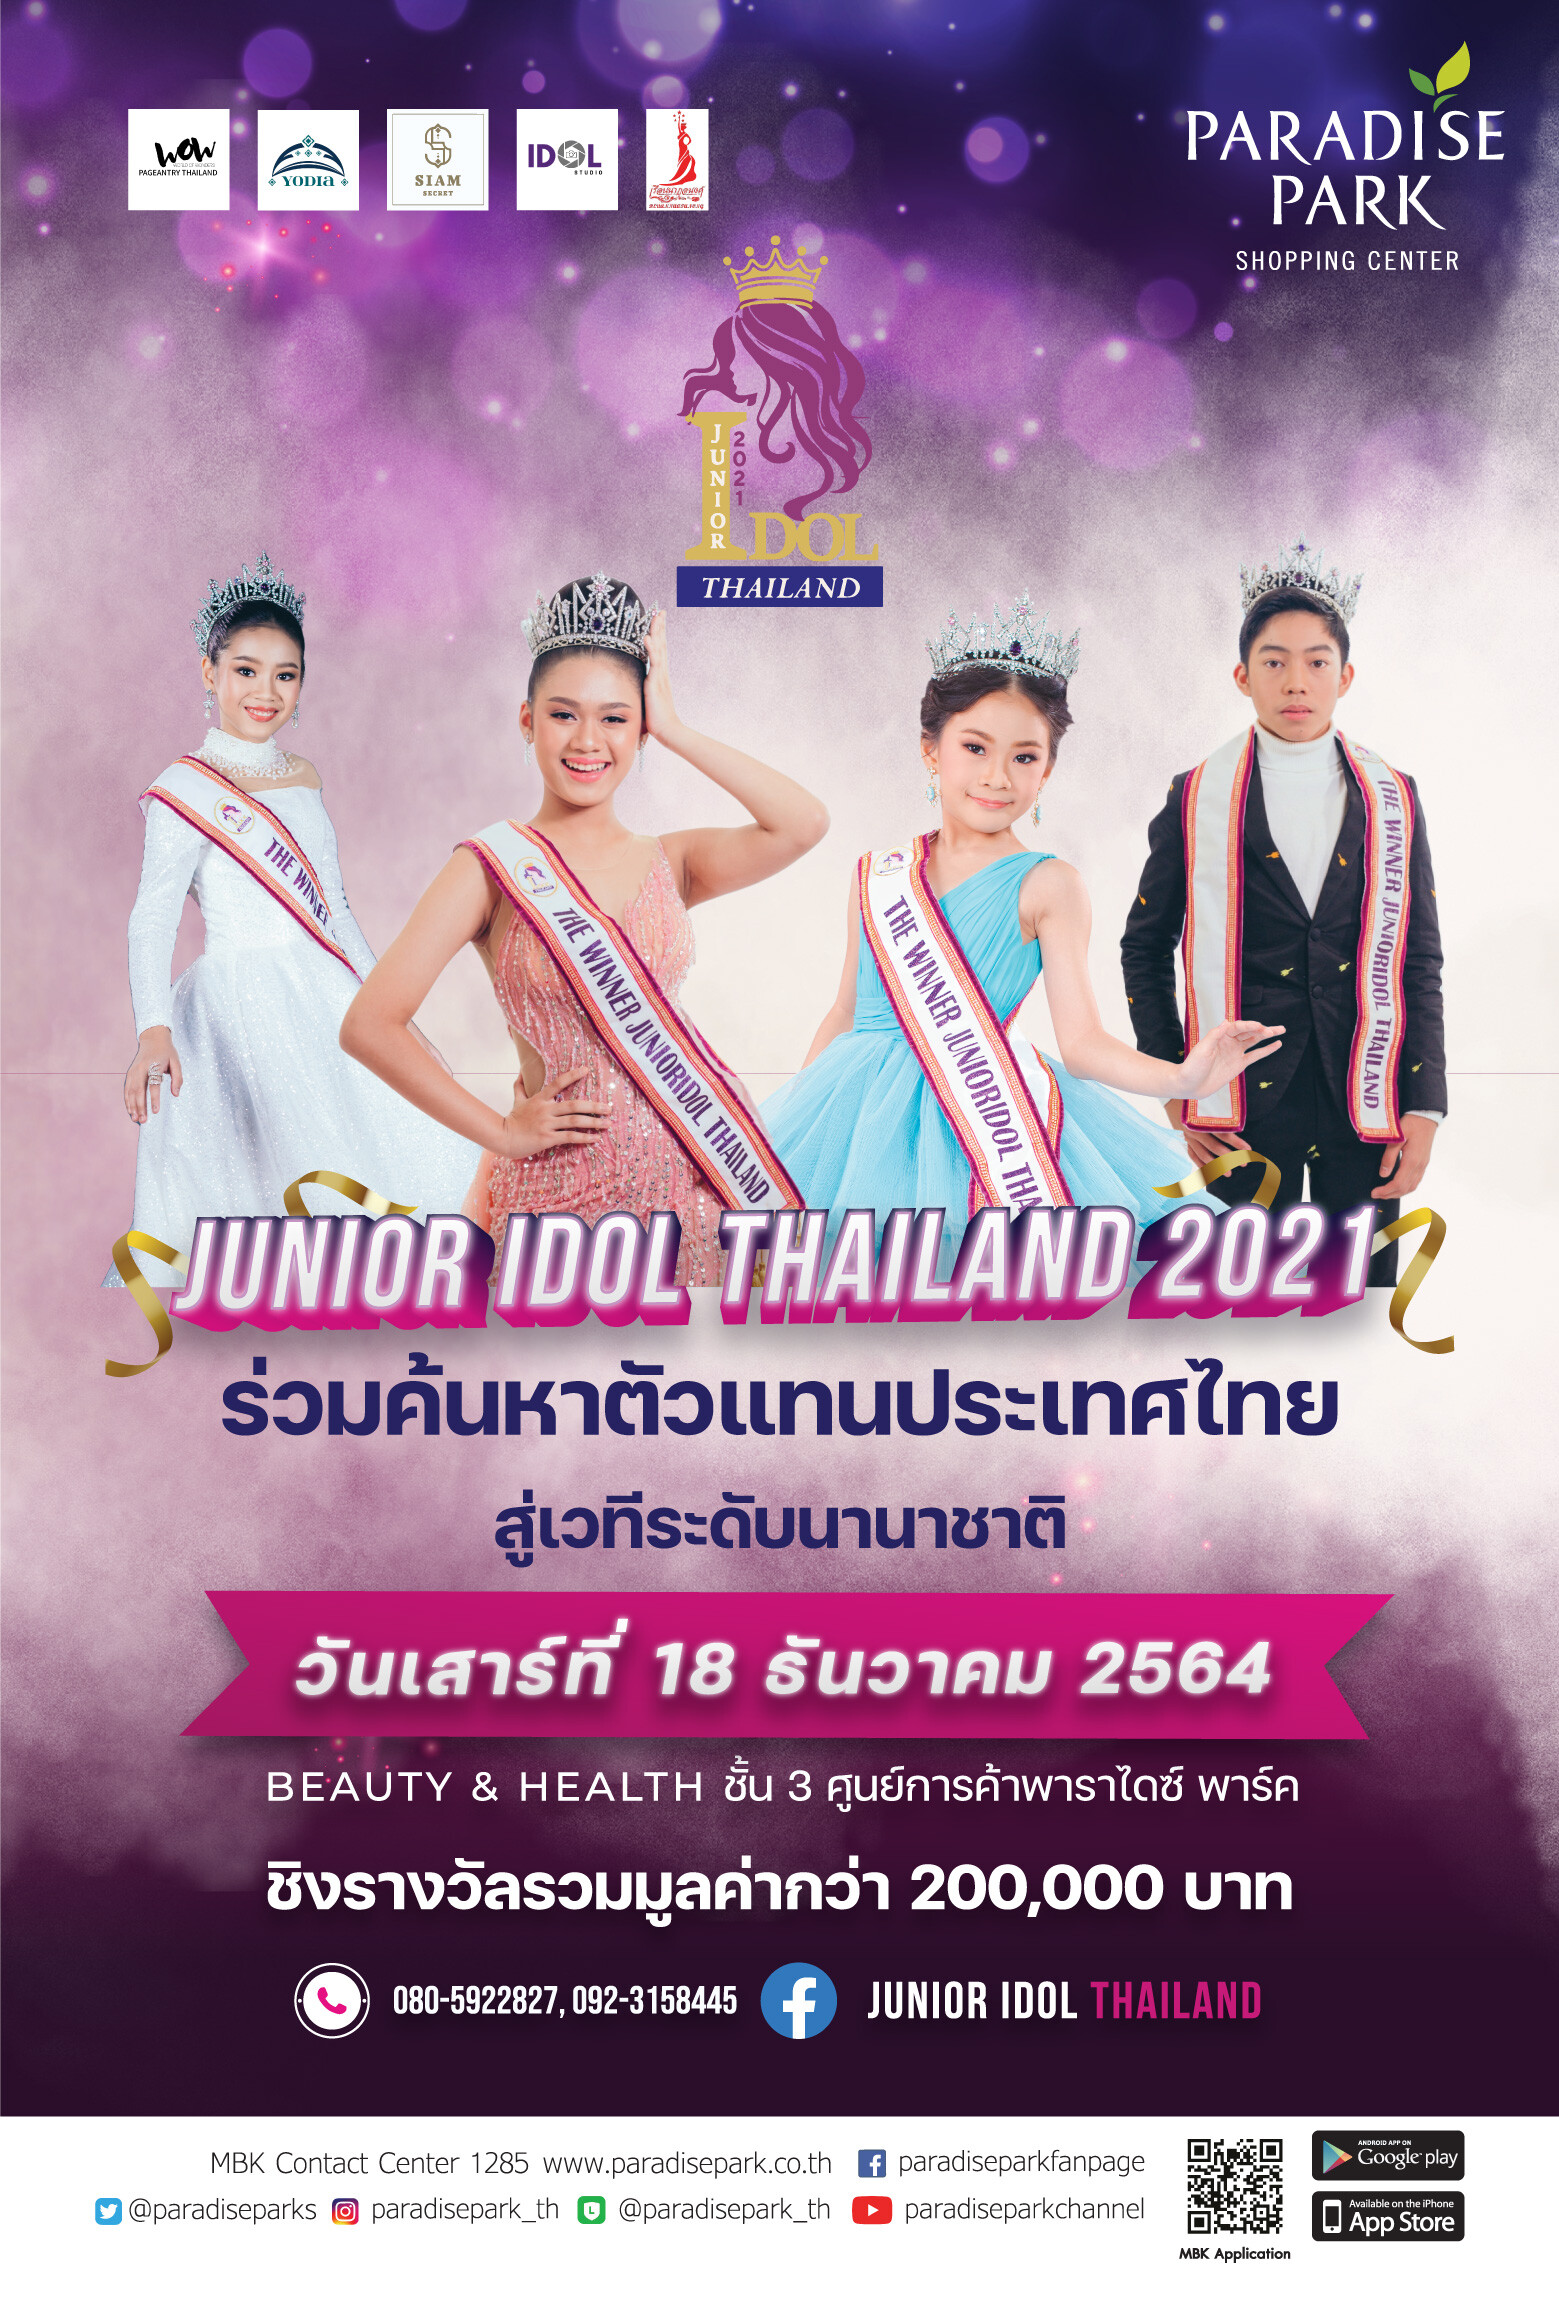 พาราไดซ์ พาร์ค ร่วมส่งเสริมความสามารถเยาวชน สนับสนุนพื้นที่จัดการประกวด Junior Idol Thailand 2021 รอบชิงชนะเลิศ